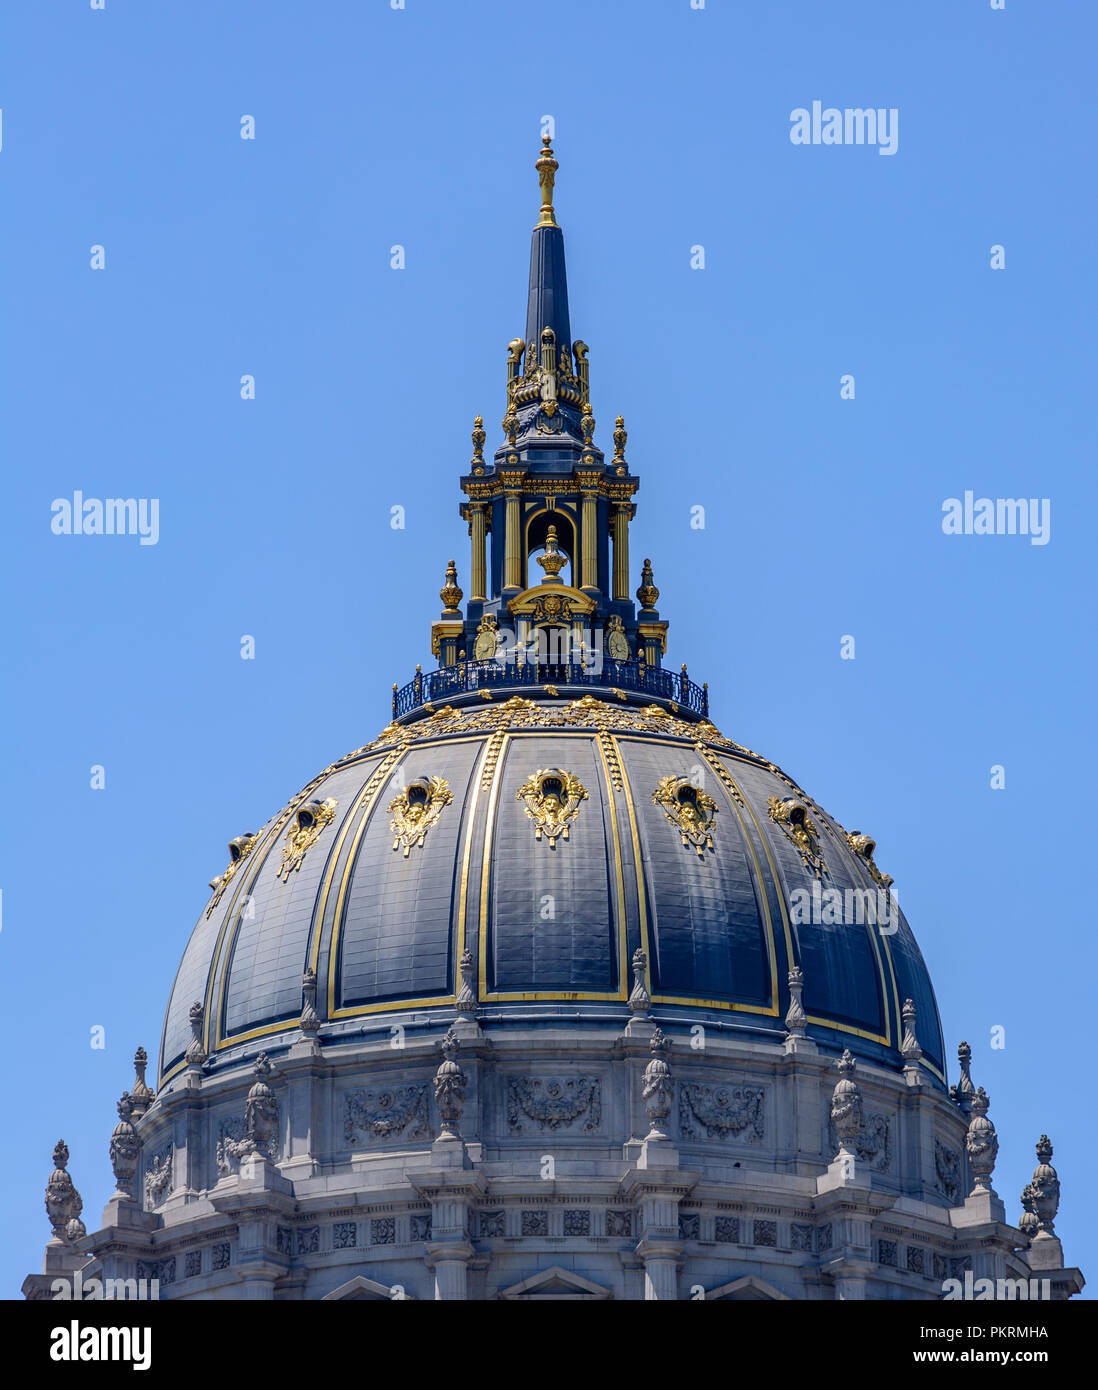 La impresionante cúpula Gold-Gilded de la Alcaldía de San Francisco con un fondo azul. Foto de stock